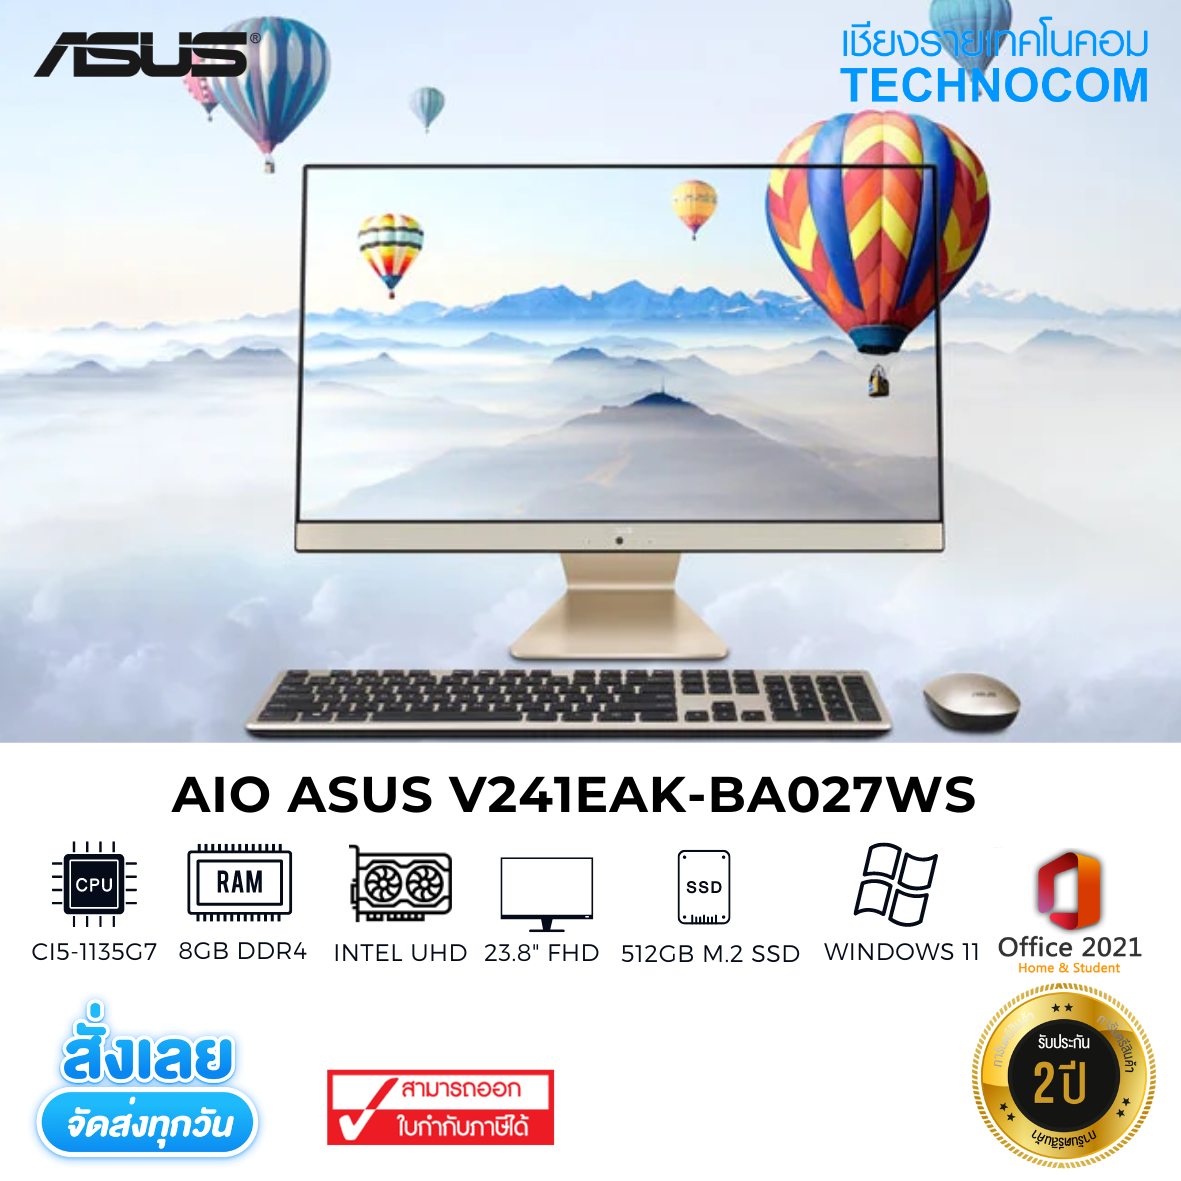 AIO ASUS V241EAK-BA027WS Ci5-1135G7/8GB/512GB M.2/23.8''FHD/WIN 11 HOME